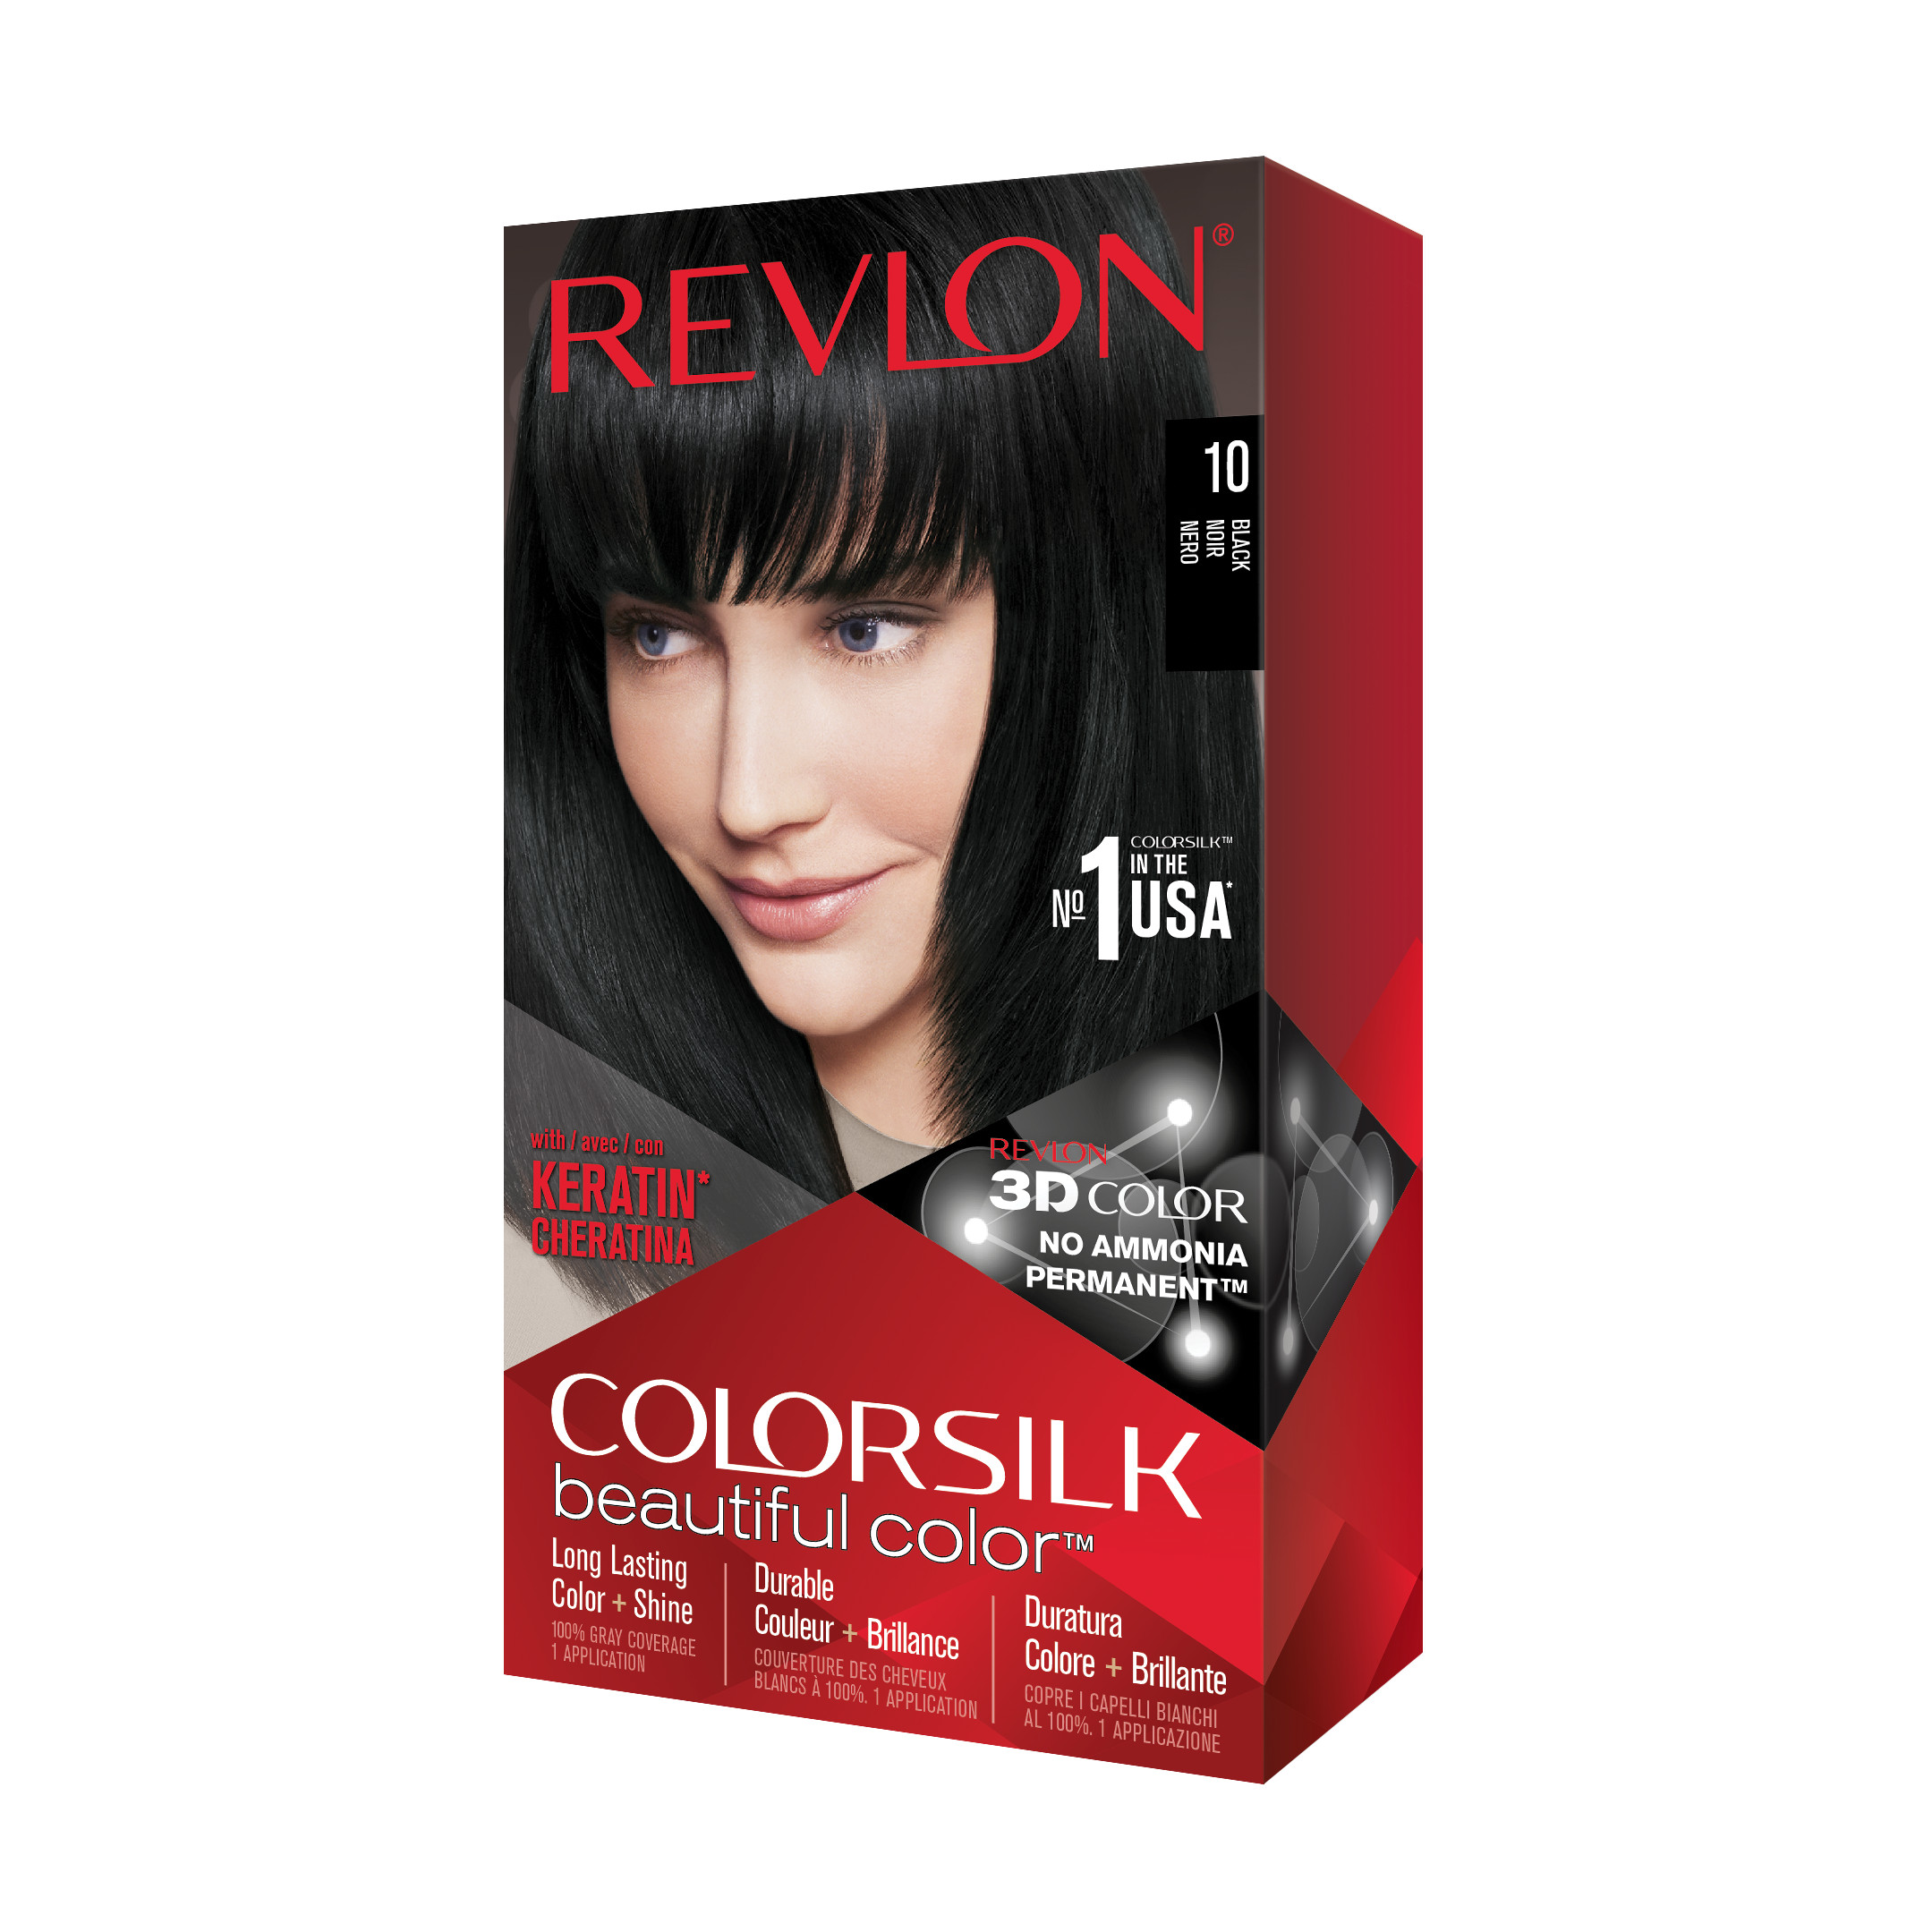 Nhuộm tóc thời trang Revlon Colorsilk 3D